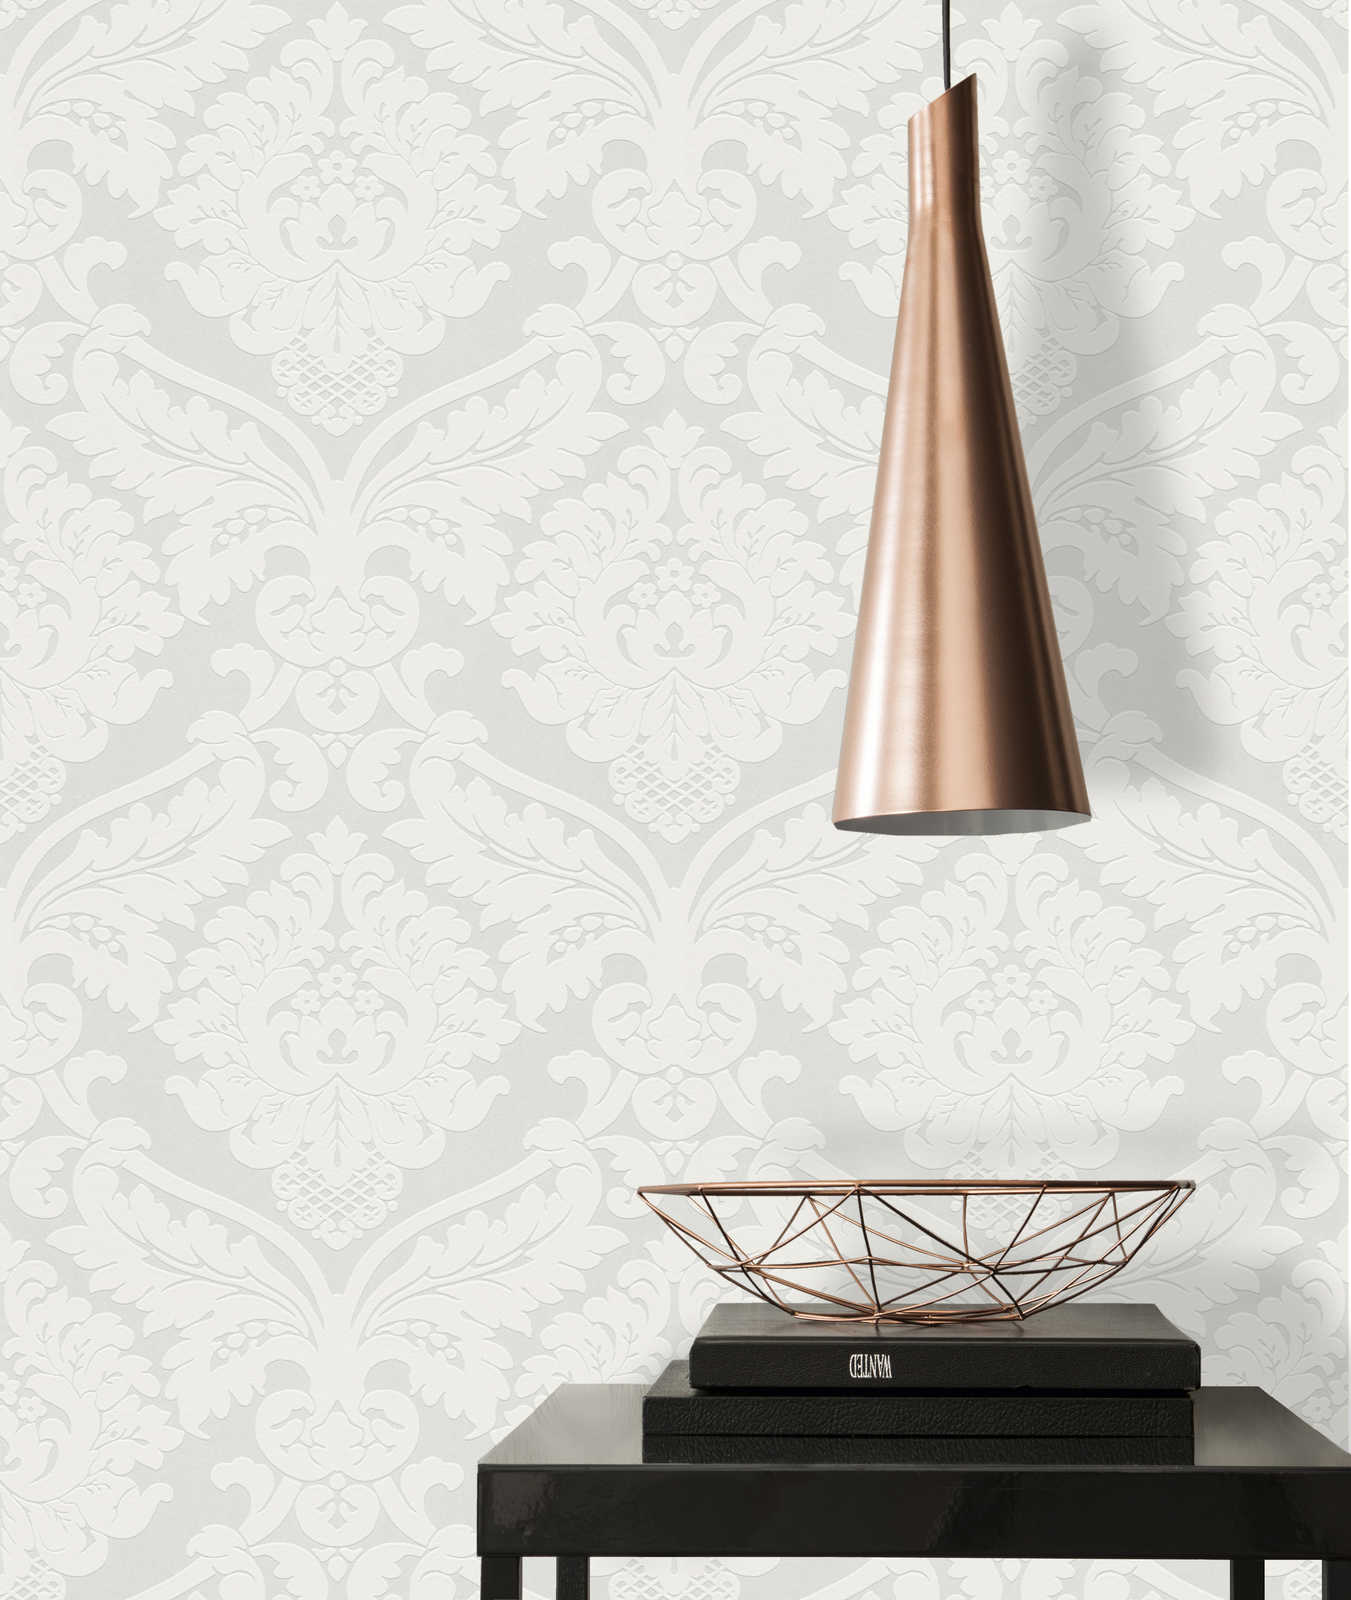             Barock-Tapete mit floralem 3D Ornament – Metallic, Weiß
        